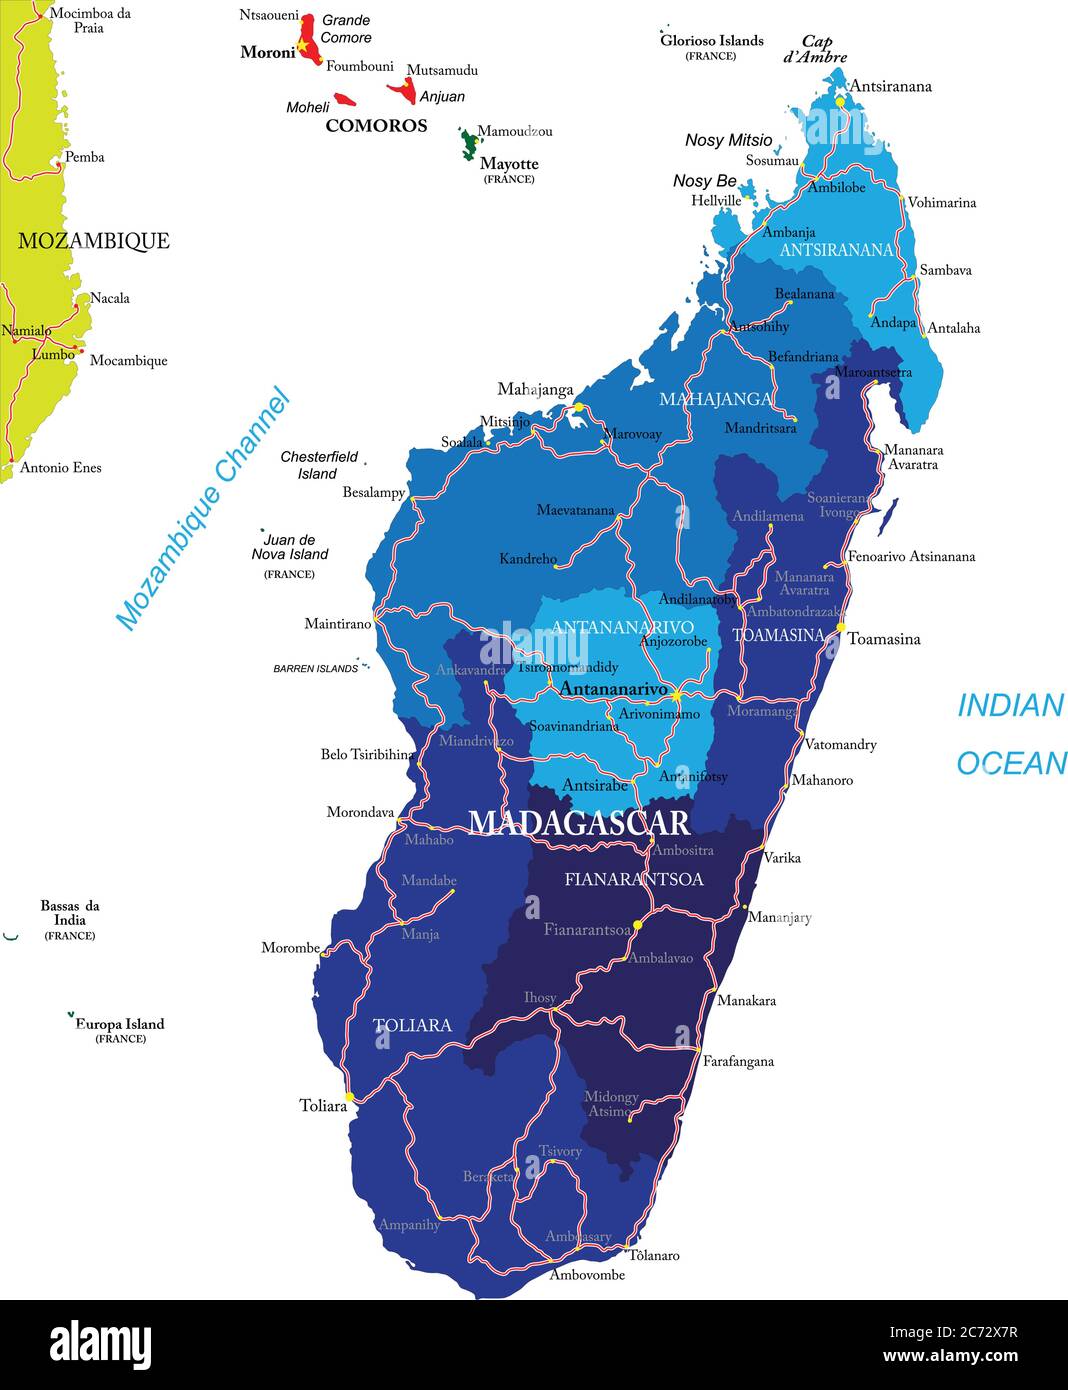 Madagaskar sehr detaillierte Vektorkarte mit Verwaltungsregionen, Hauptstädten und Straßen. Stock Vektor